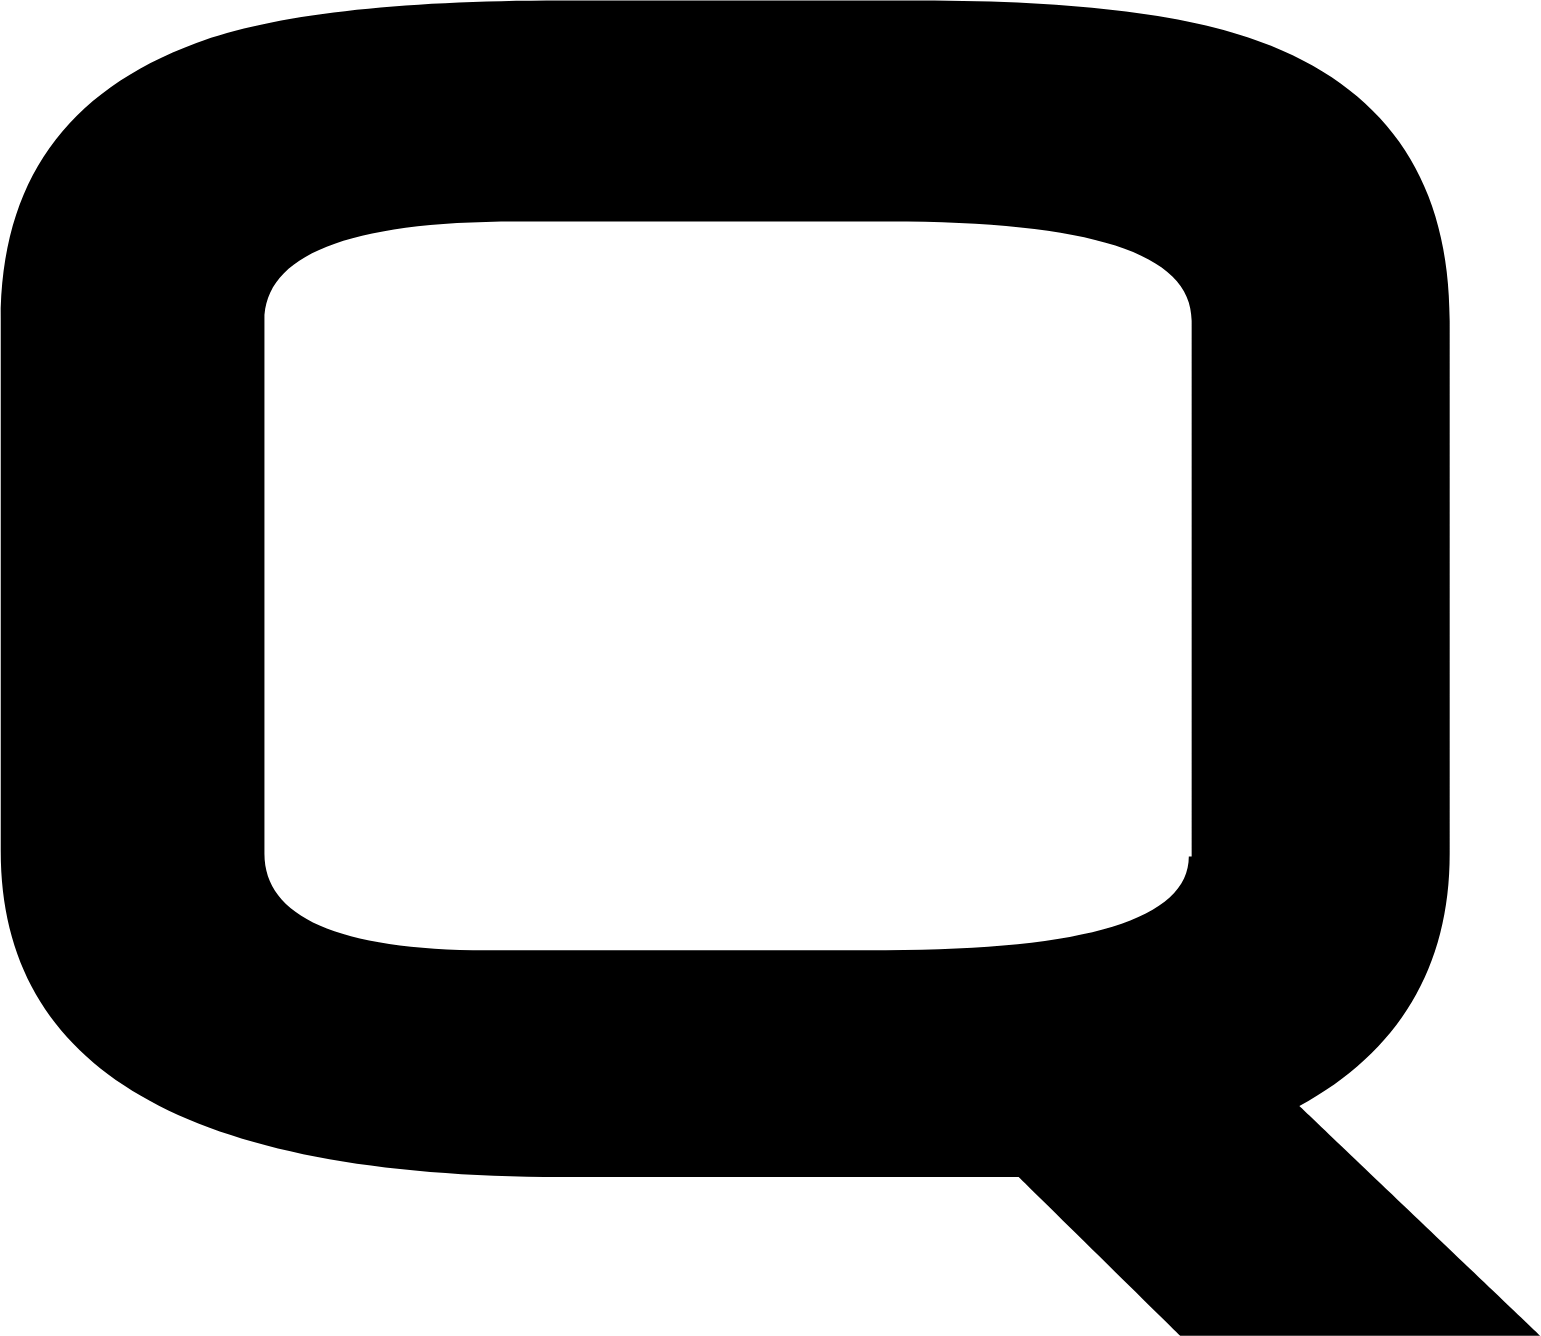 Quicklogic logo (transparent PNG)